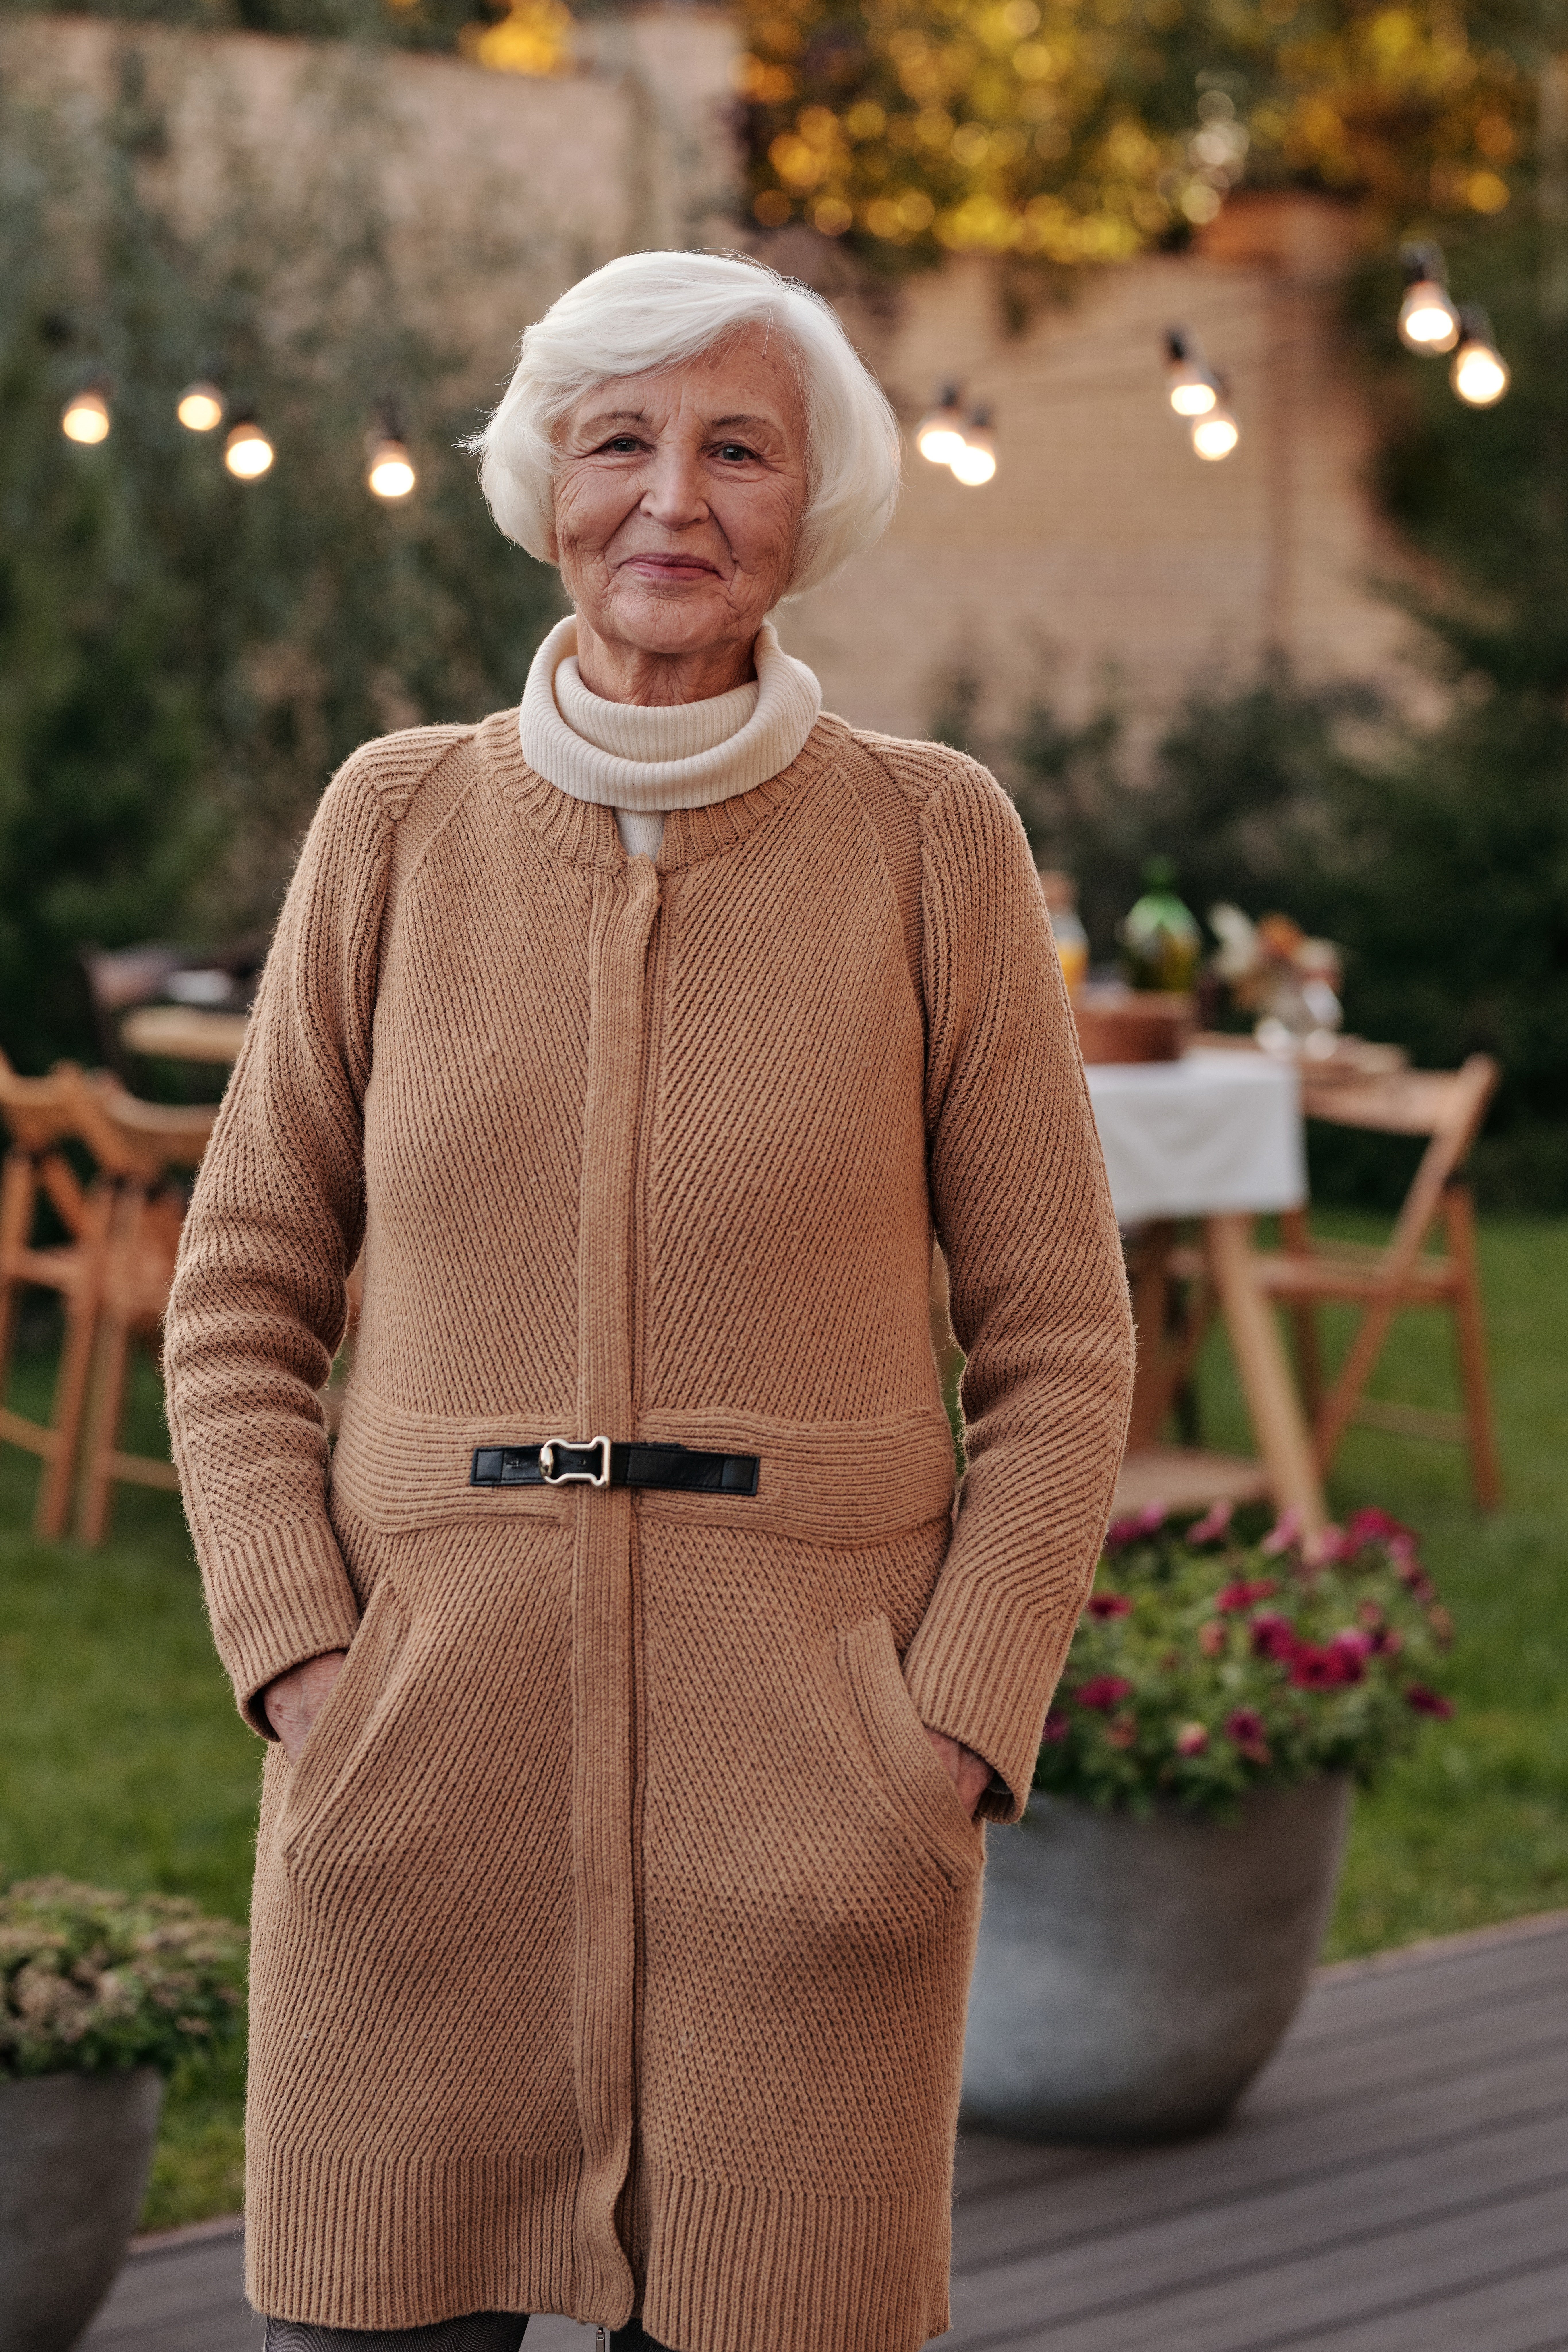 Ältere Frau steht in einem Garten | Quelle: Pexels